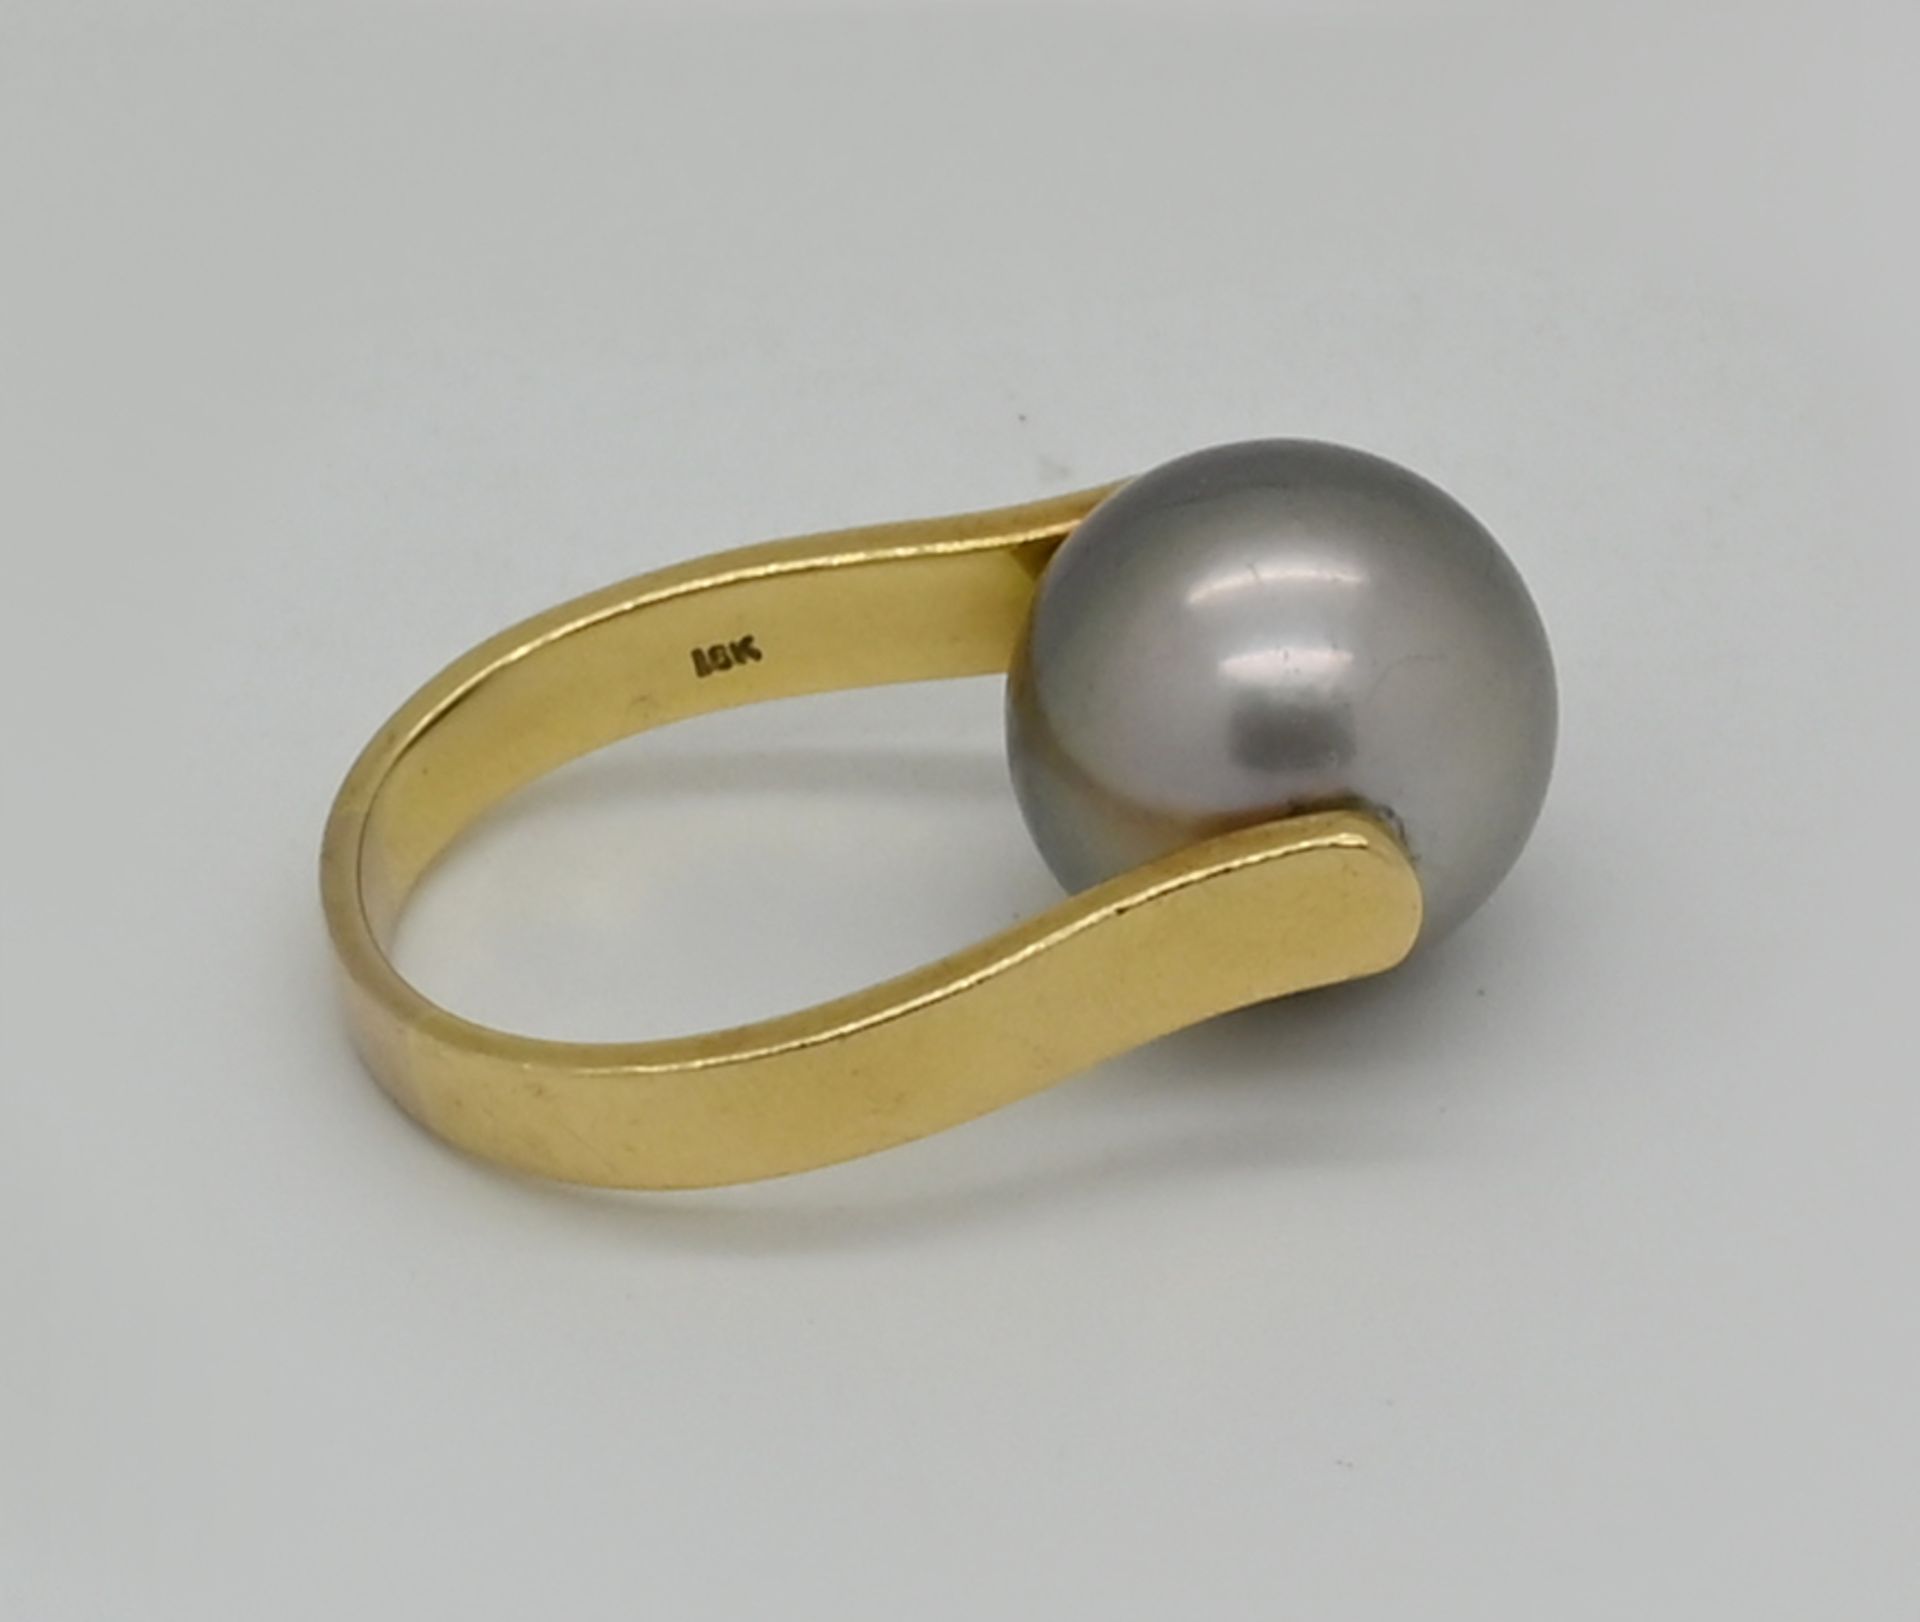 1 Damenring GG 18ct., mit grauer Perle, Durchmesser bis zu ca. 1,4cm, Ringgr. ca. 56, Tsp. - Bild 2 aus 2